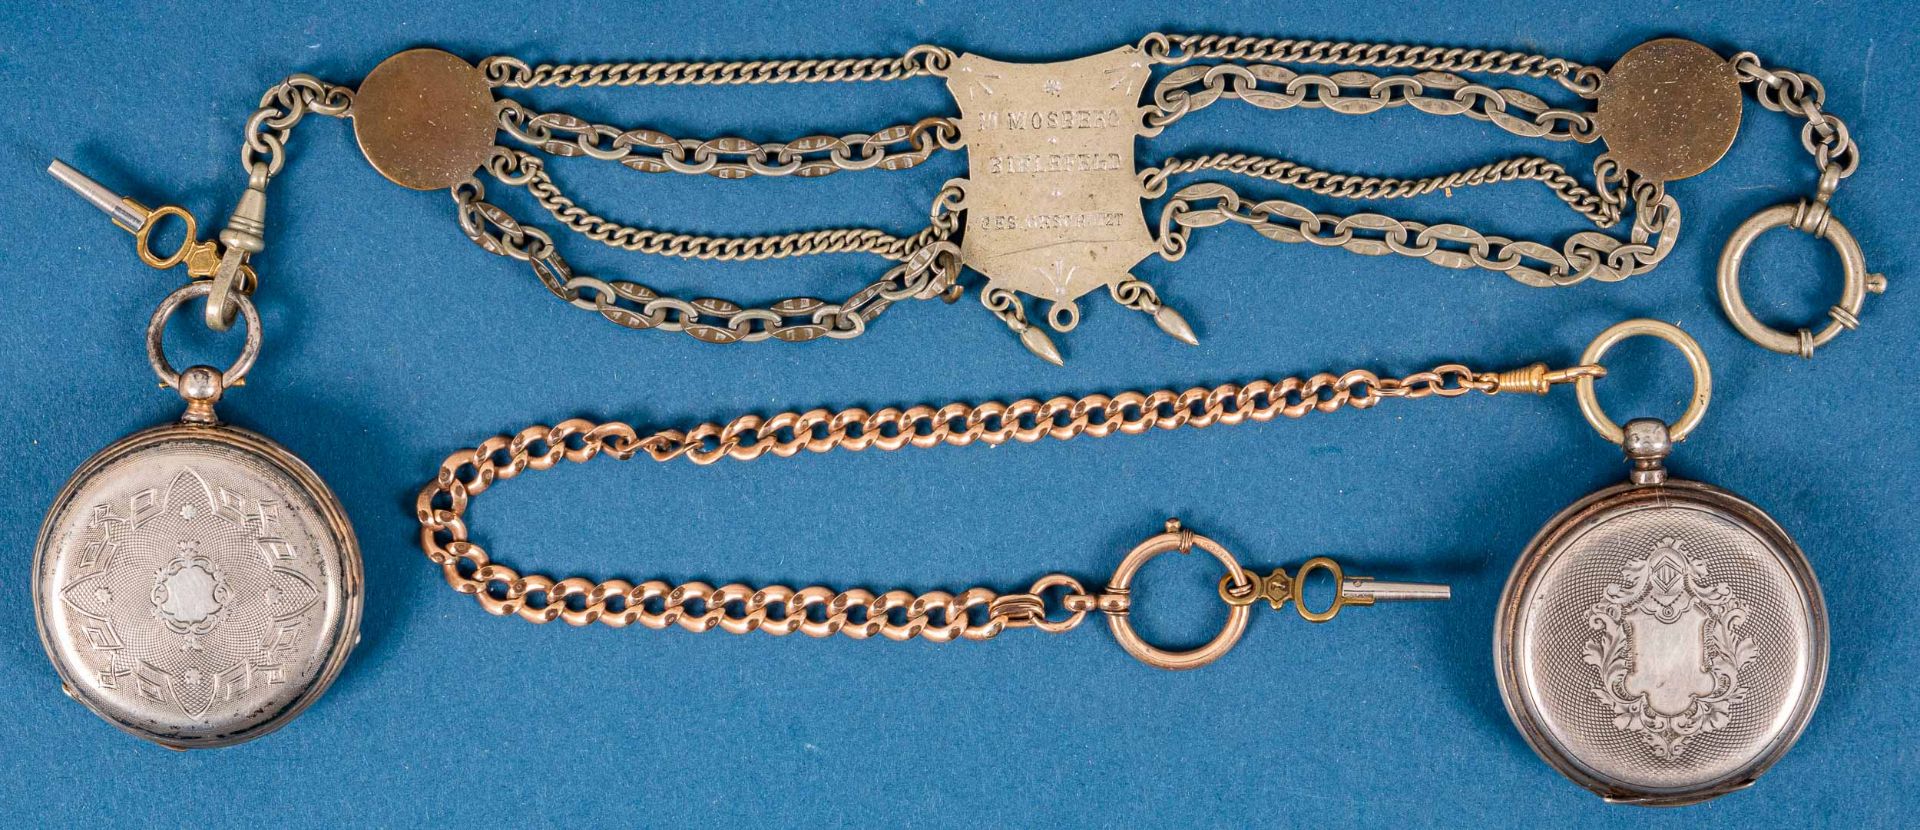 2 antike Taschenuhren mit Schlüsselaufzug, 1 Gehäuse in Silber, beide um 1900, - Image 7 of 21